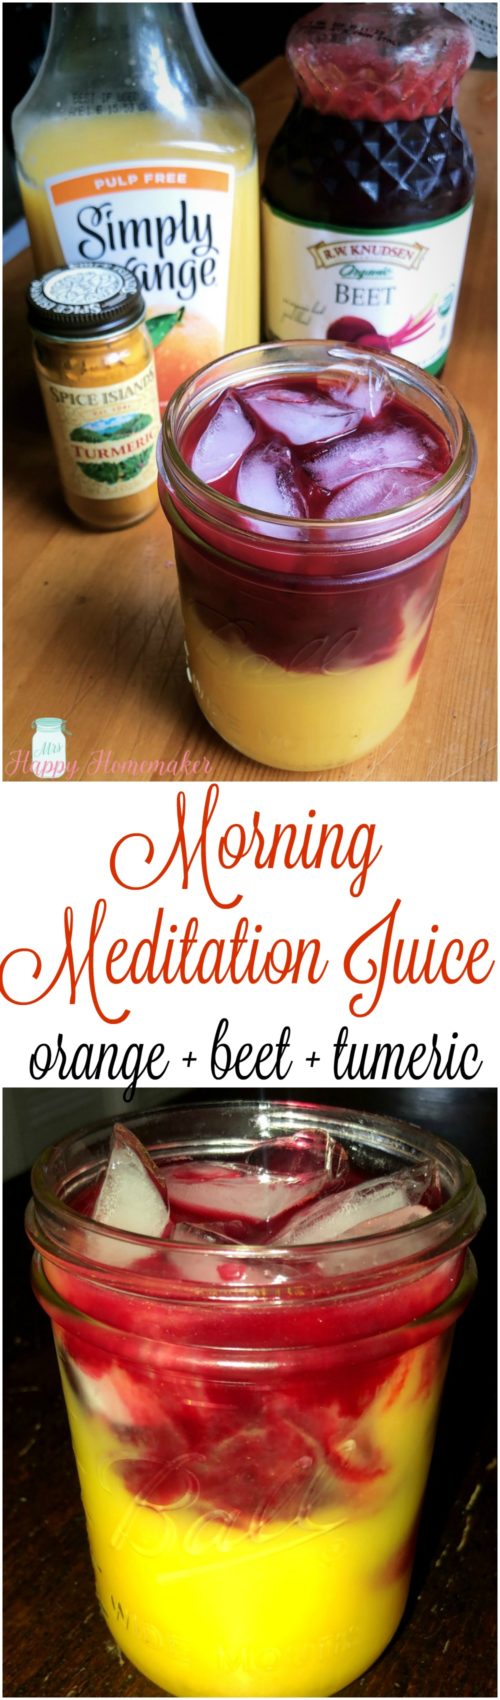 Morning Meditation Juice - orange, beet, turmeric